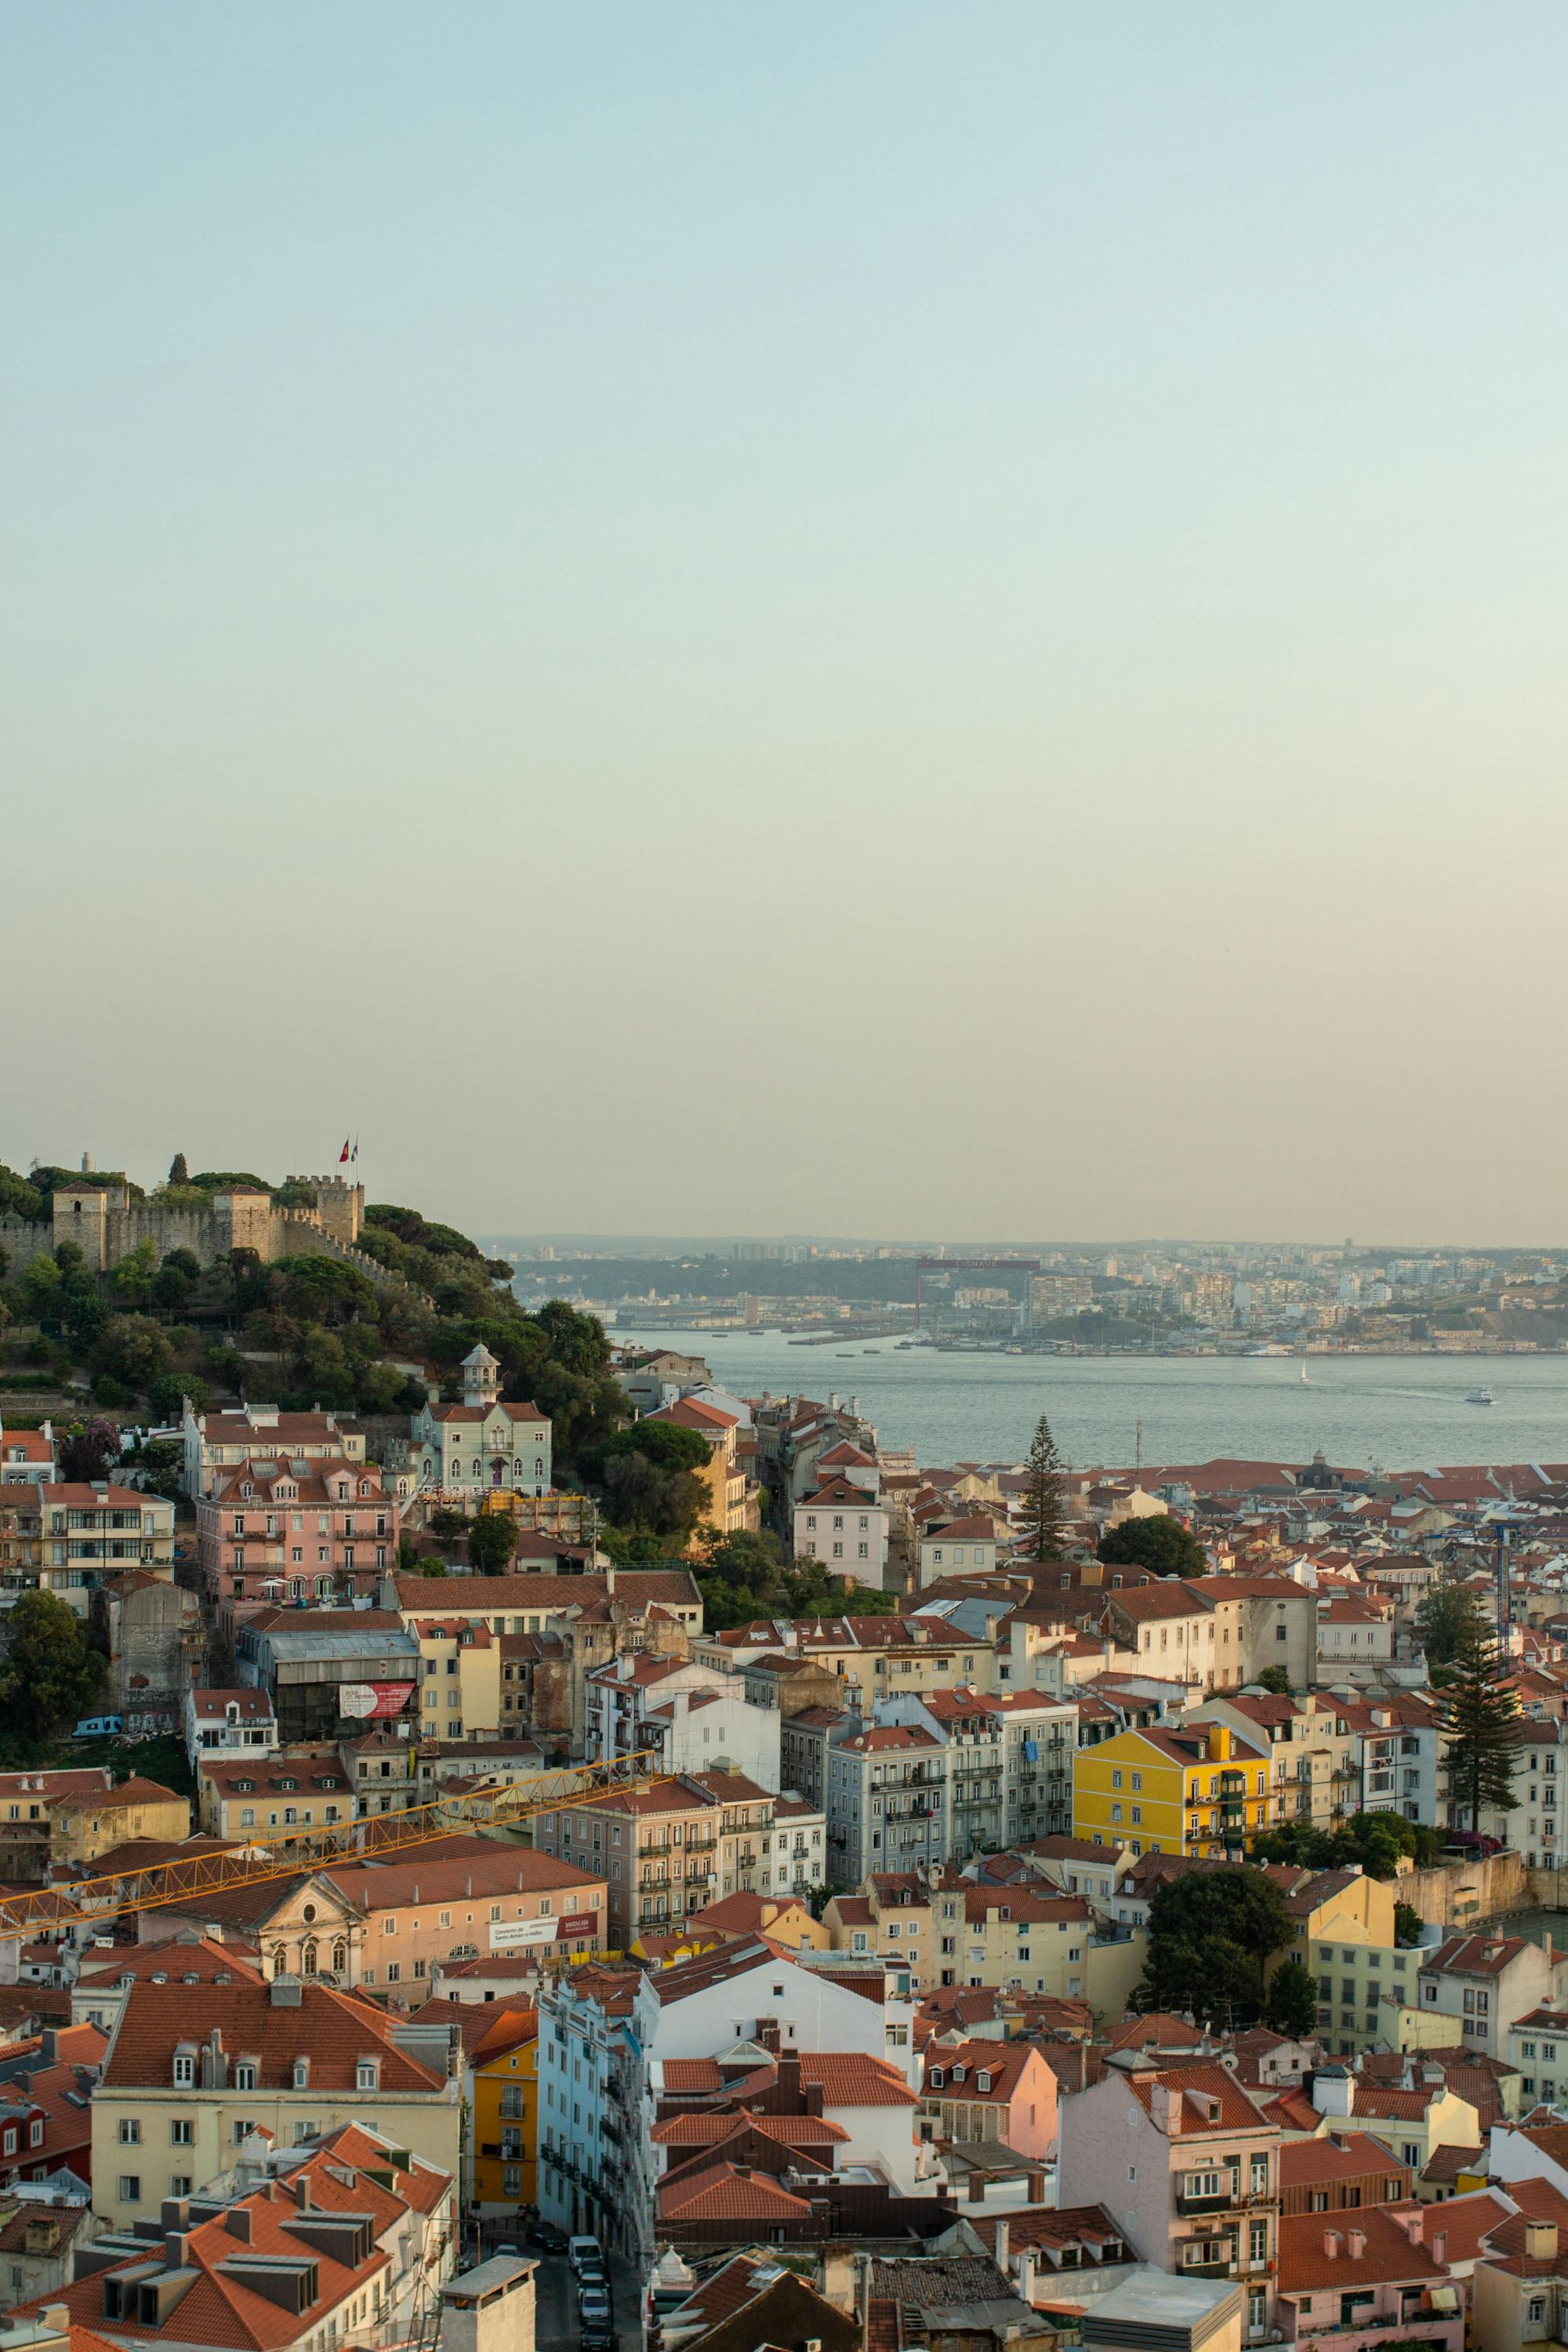 Widok na miasto Lizbona, jej kolorowe domy oraz rzekę Tejo